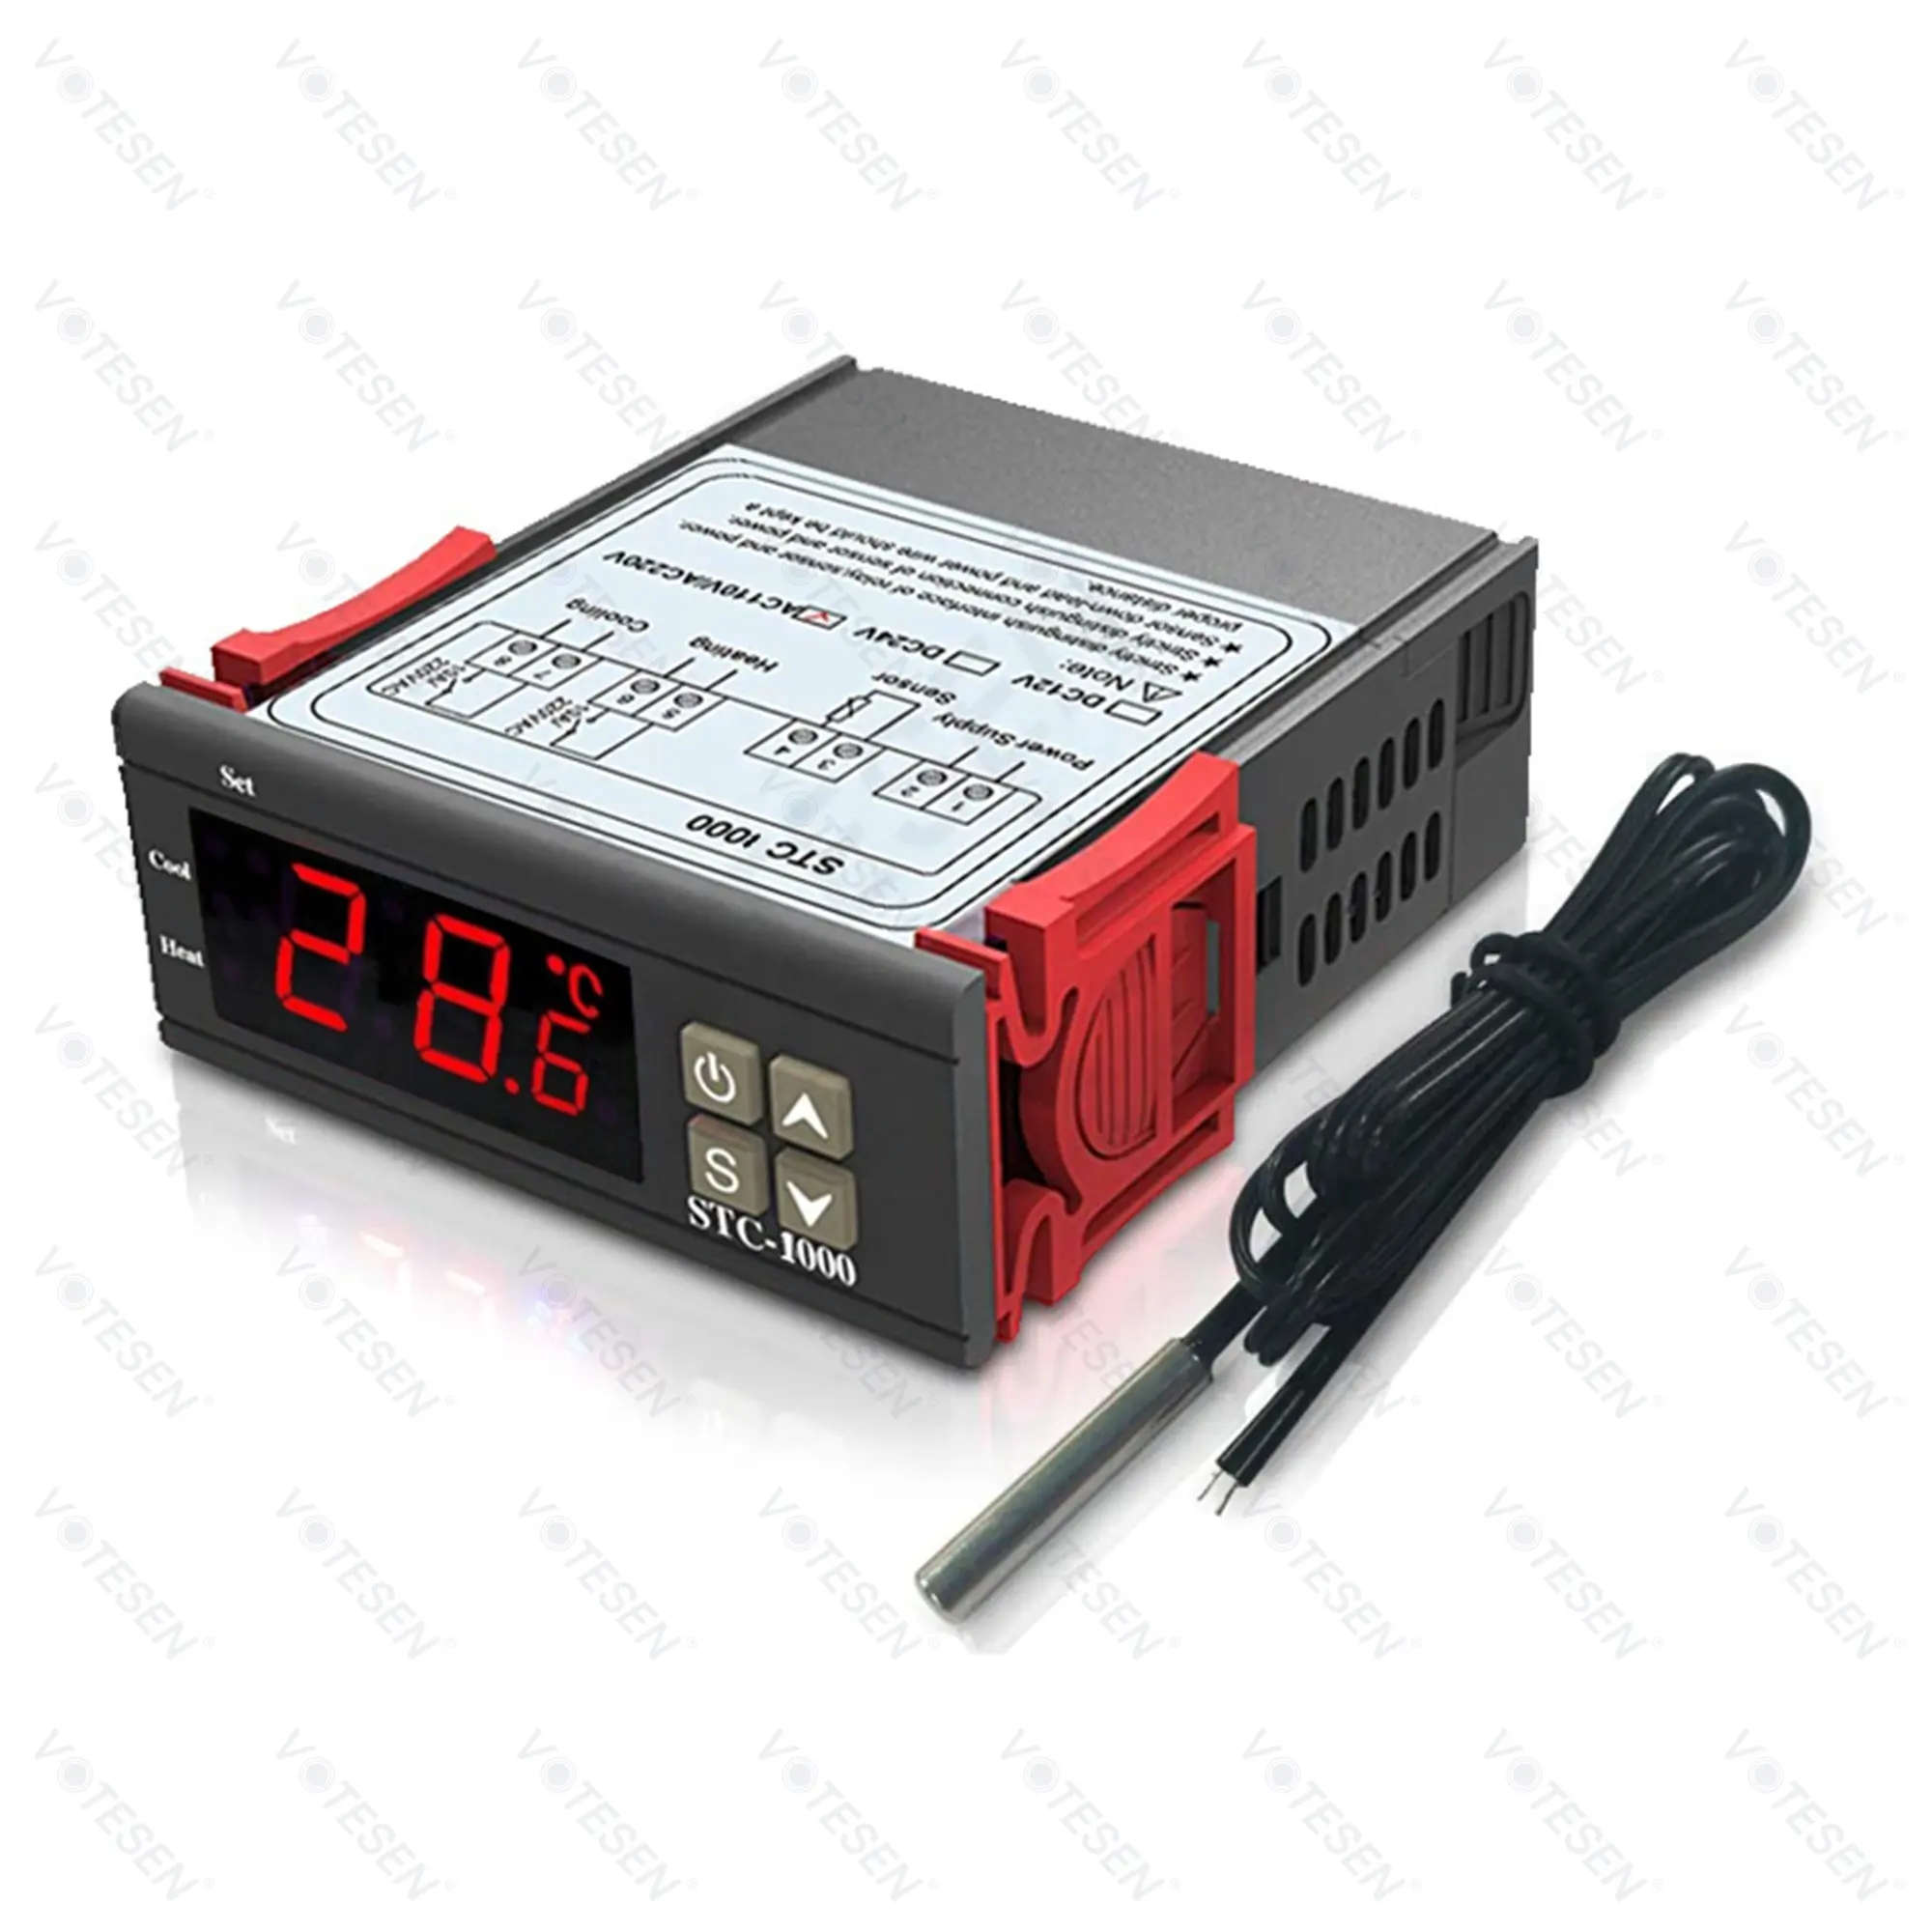 Digital Temperature Controller STC-1000 Thermostat for Aquarium, Incubator, Refrigeration